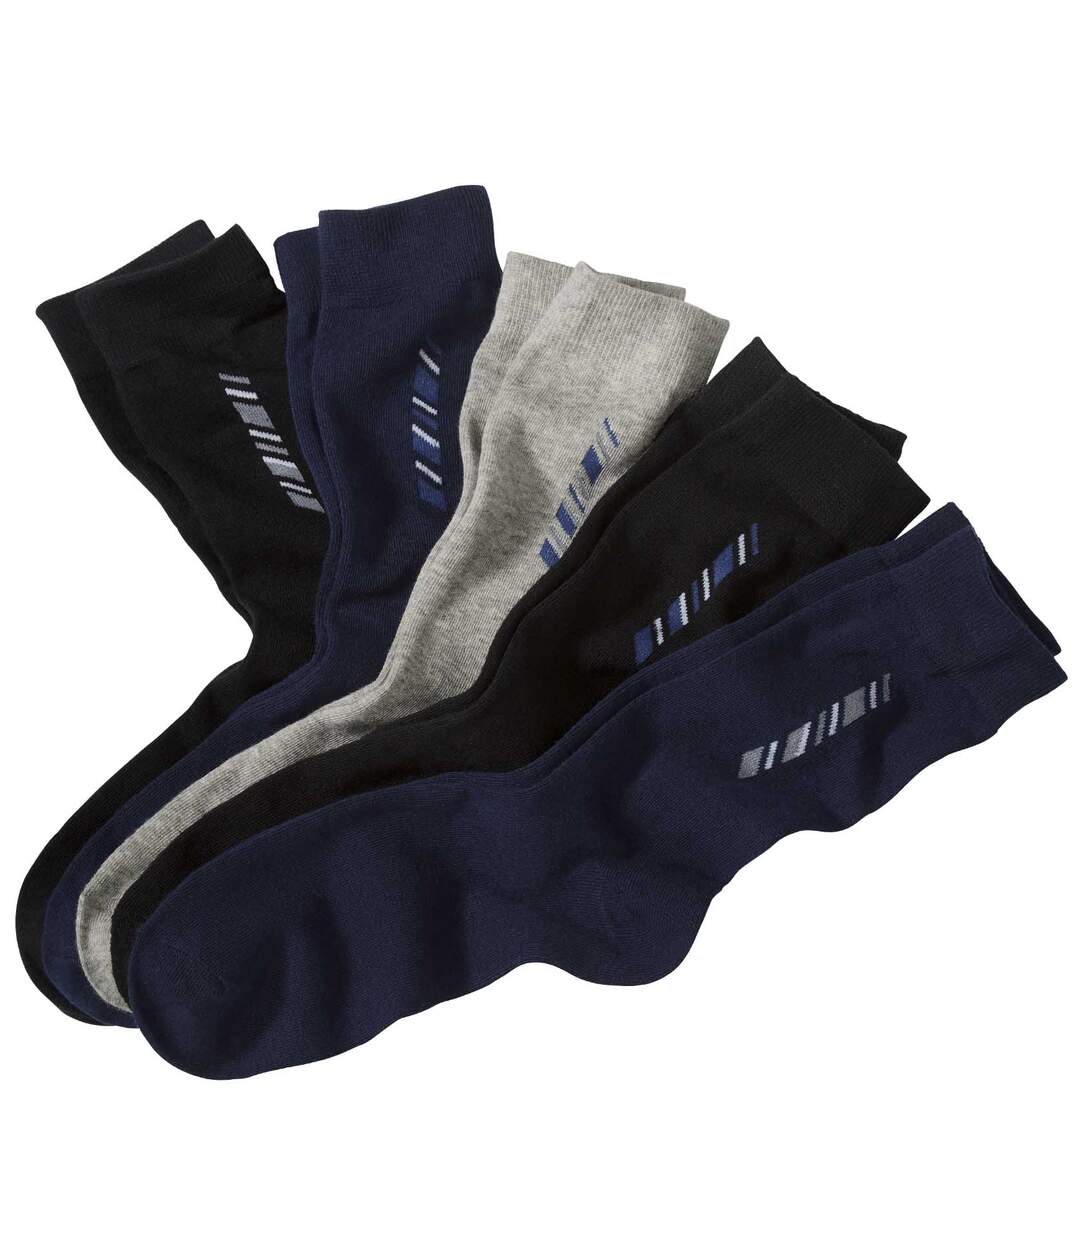 5 Pairs of Men's Patterned Socks - Black Navy Gray Atlas For Men